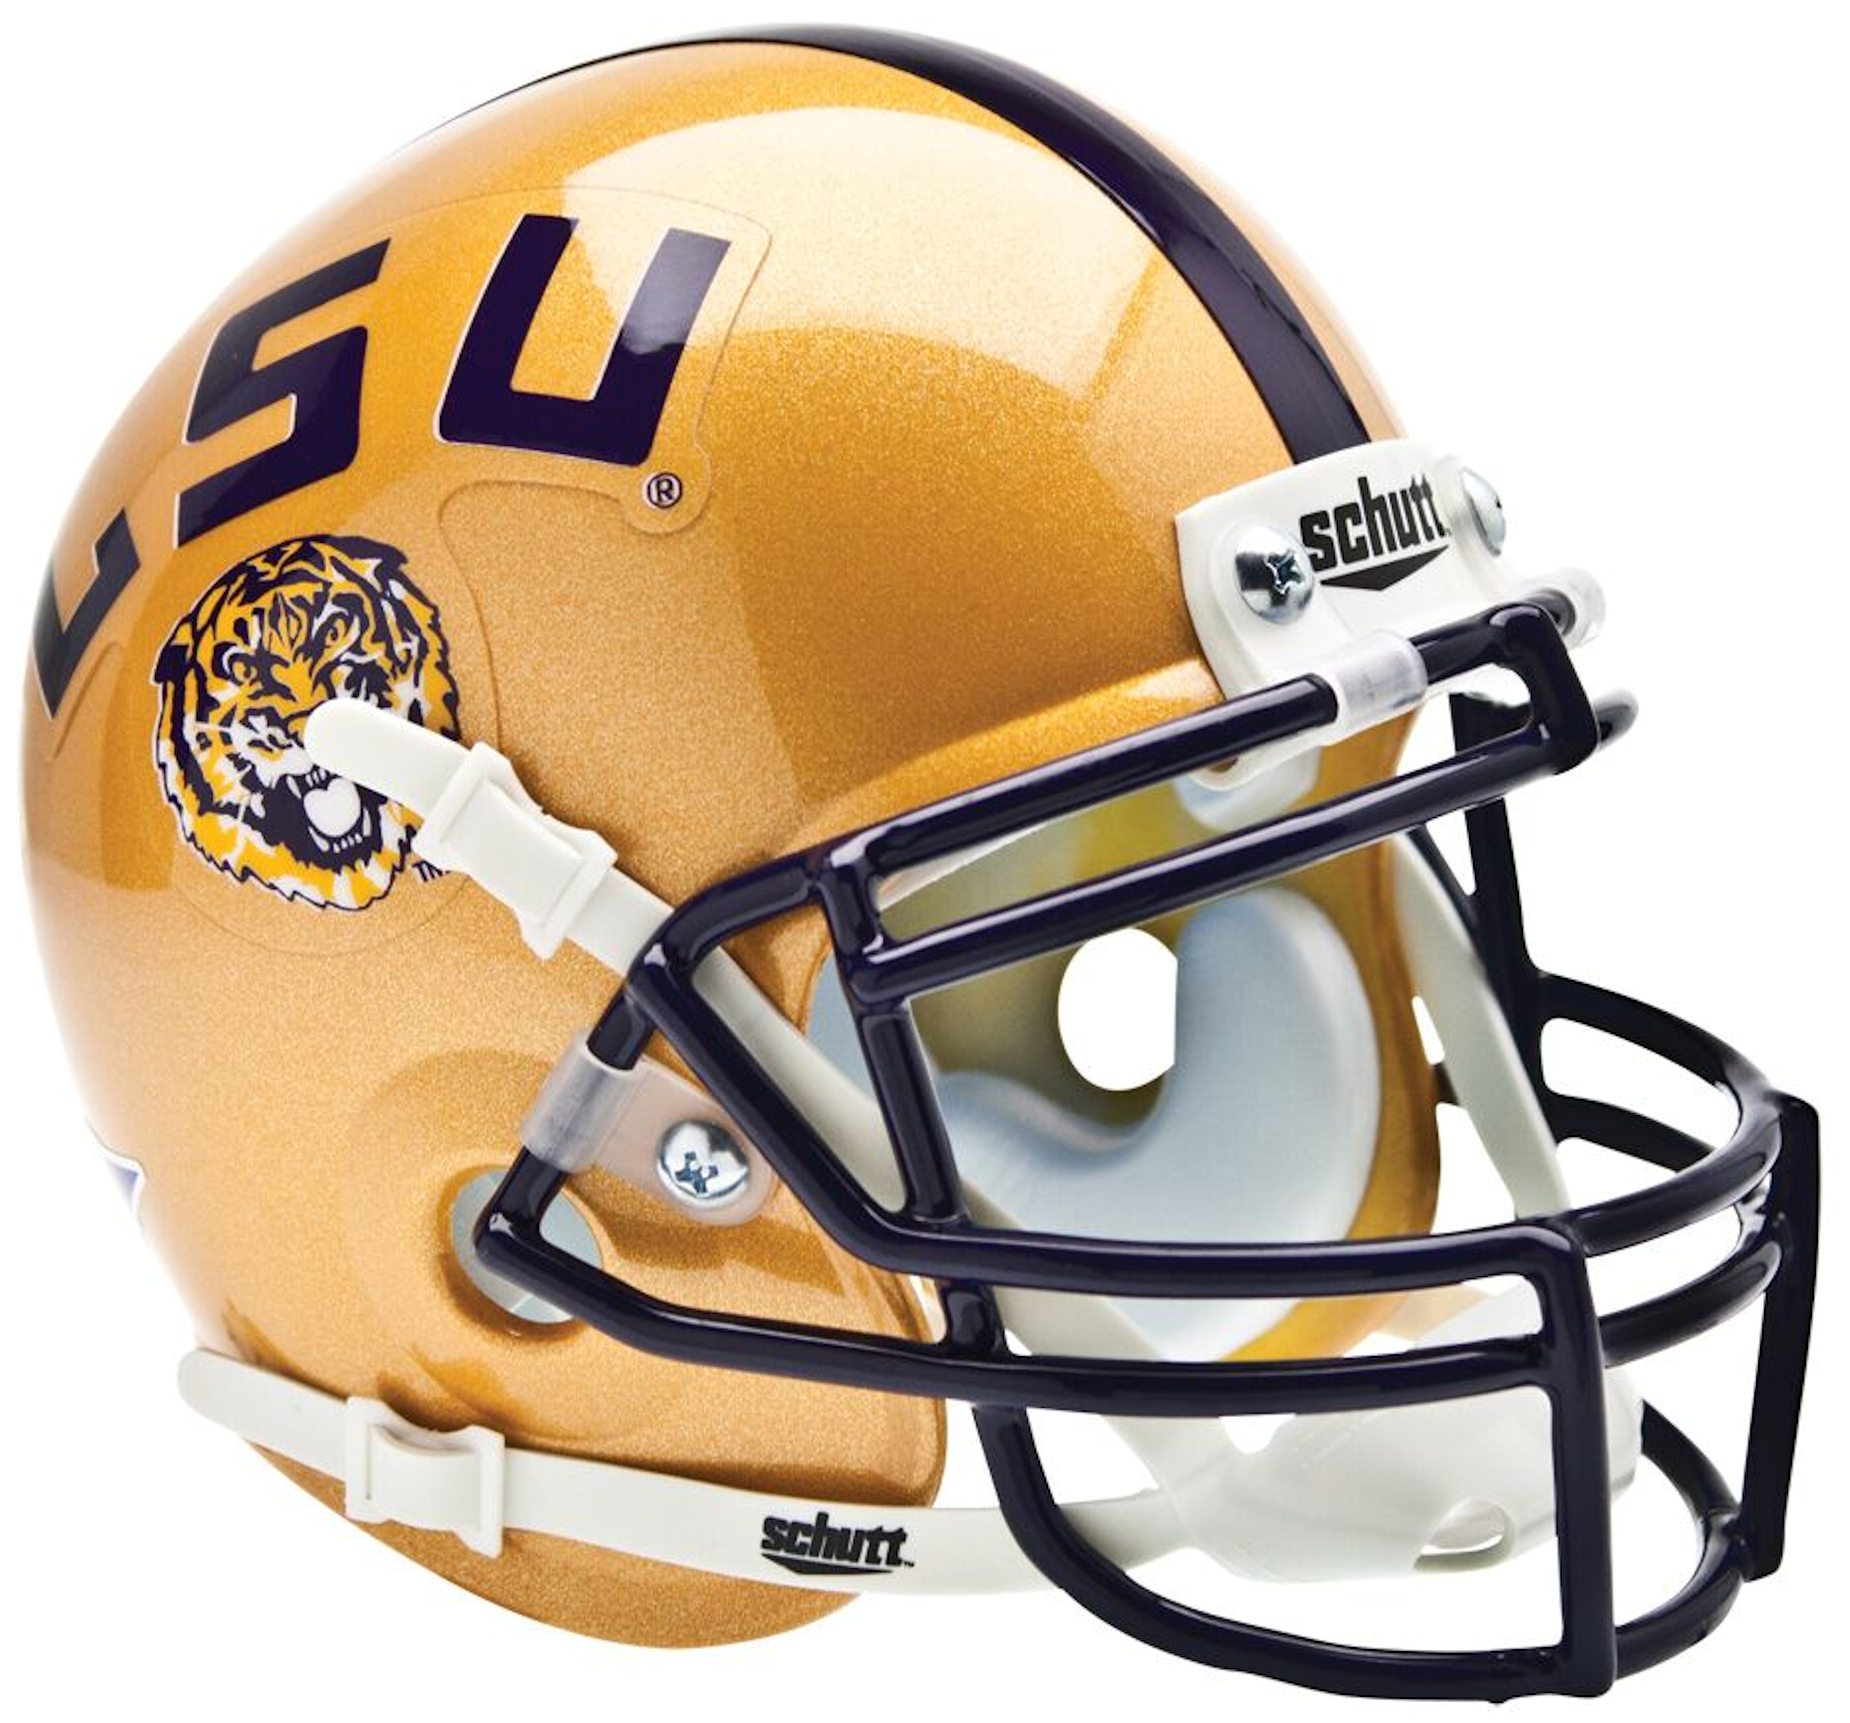 LSU Tigers Mini XP Authentic Helmet Schutt <B>Gold</B>